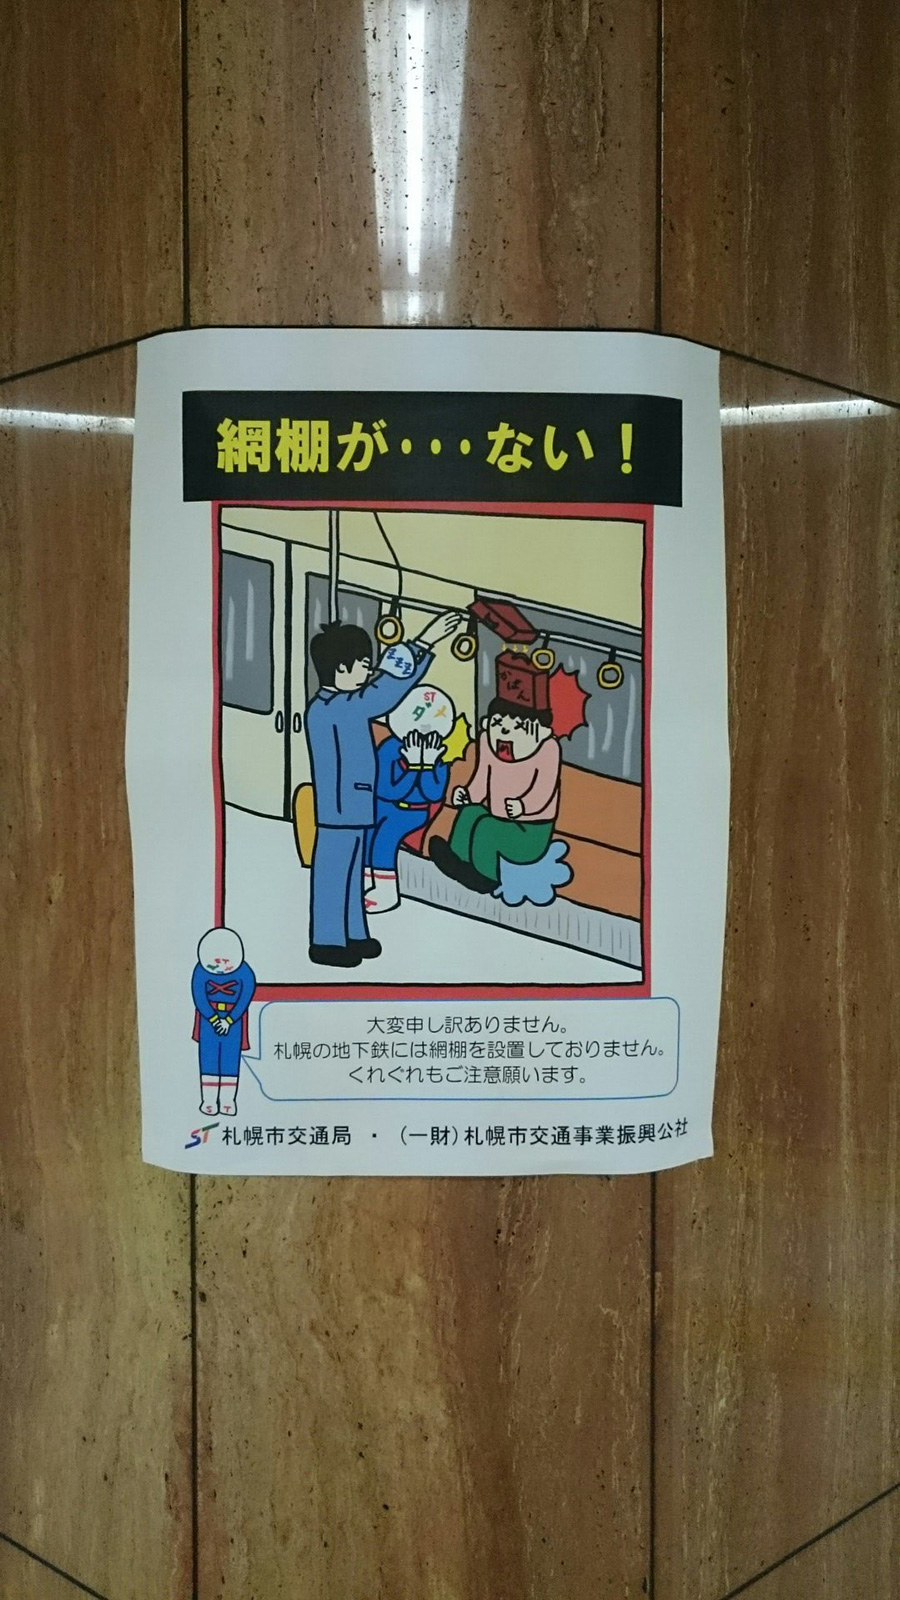 札幌の地下鉄おもろい